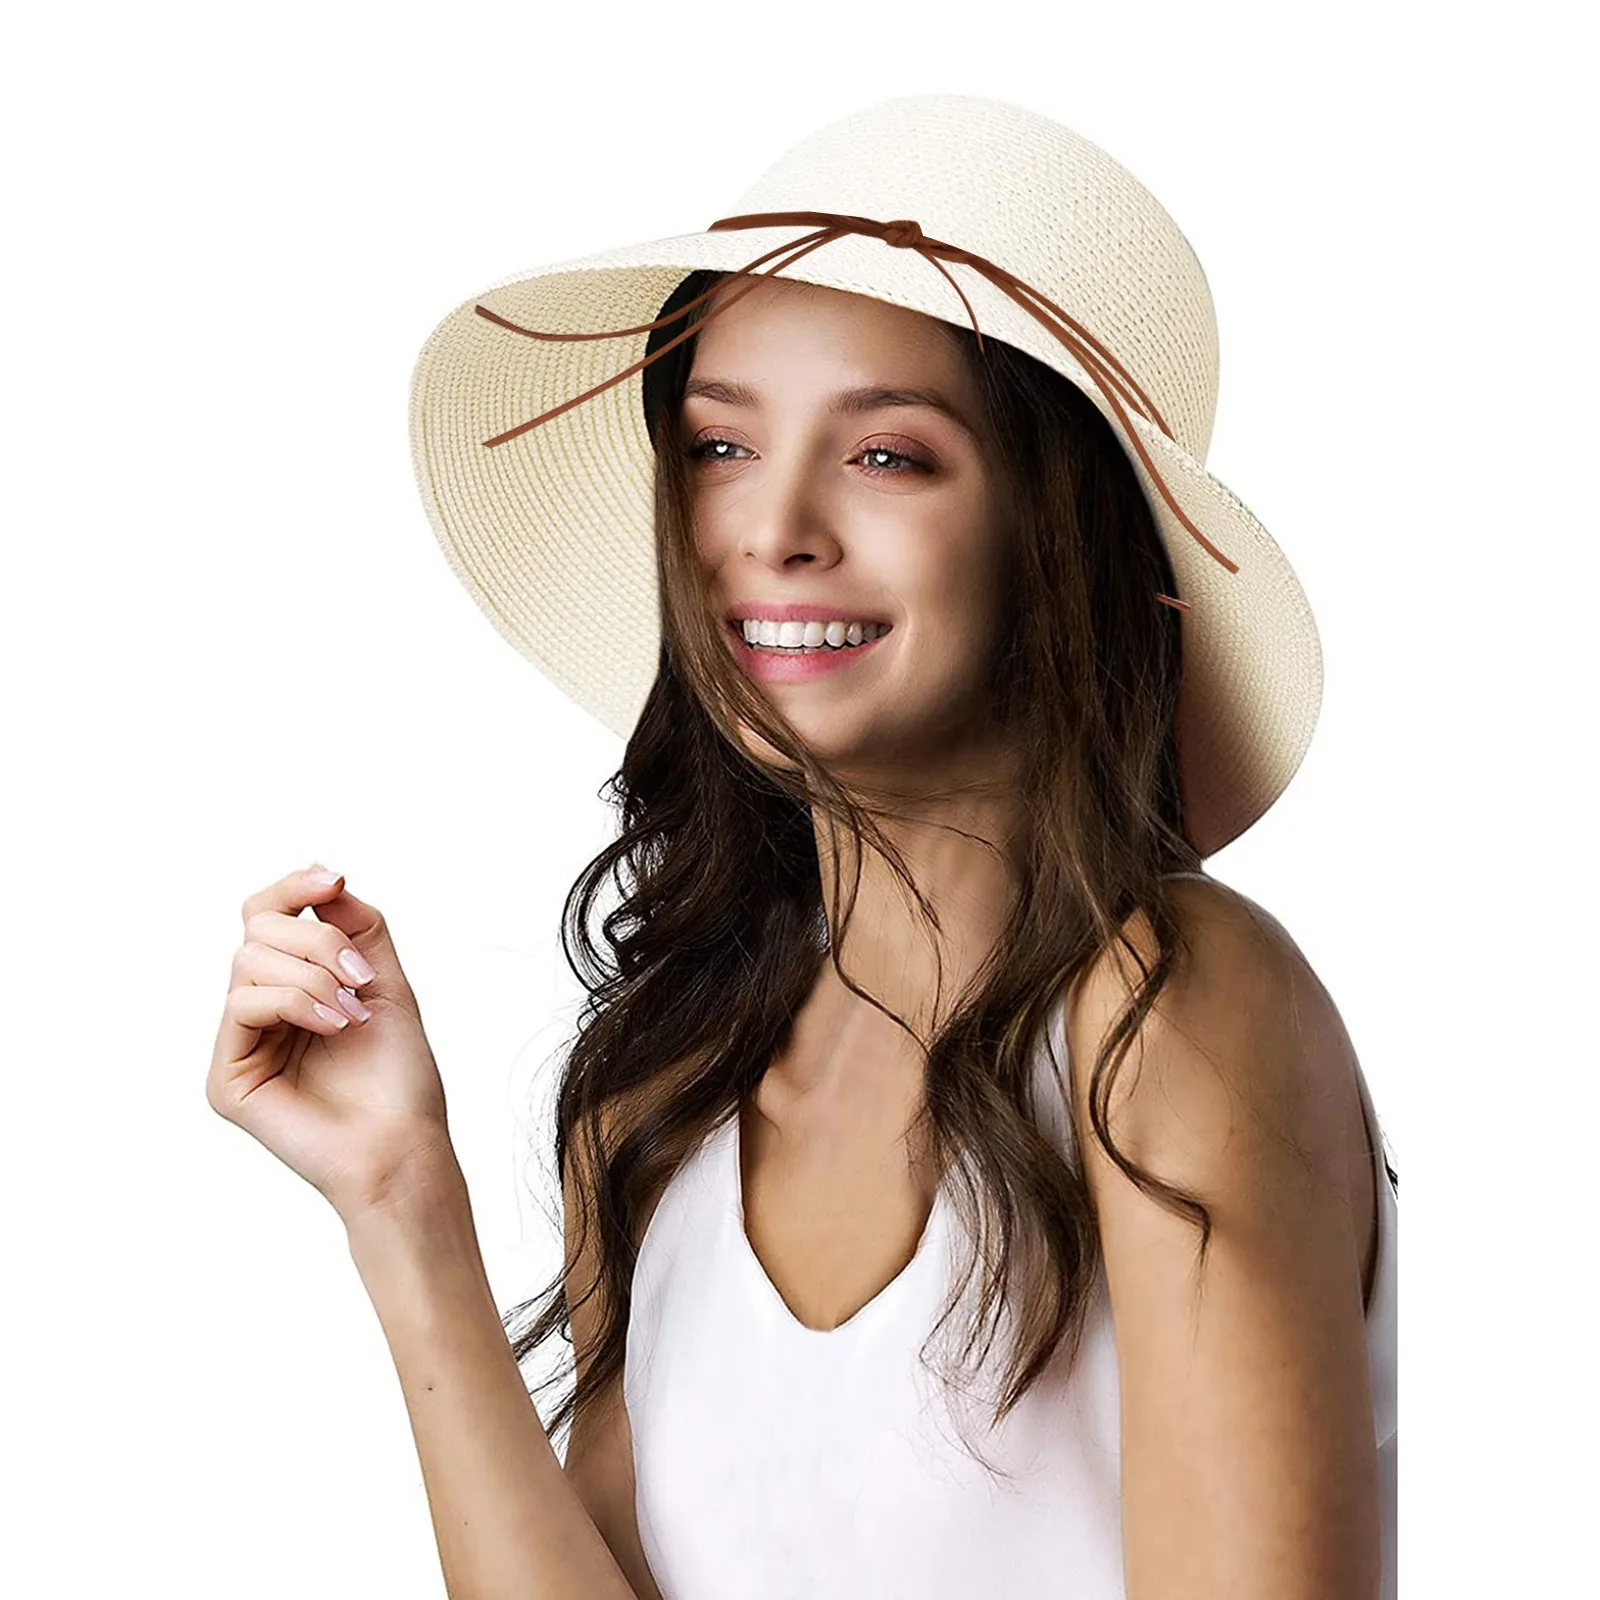 נשים קיץ רחב כובע קש חוף מתקפל שמש כובעים רפוי להפשיל סאן קאפ UPF 50+ כובעי בייסבול החוף כובעים גברים4